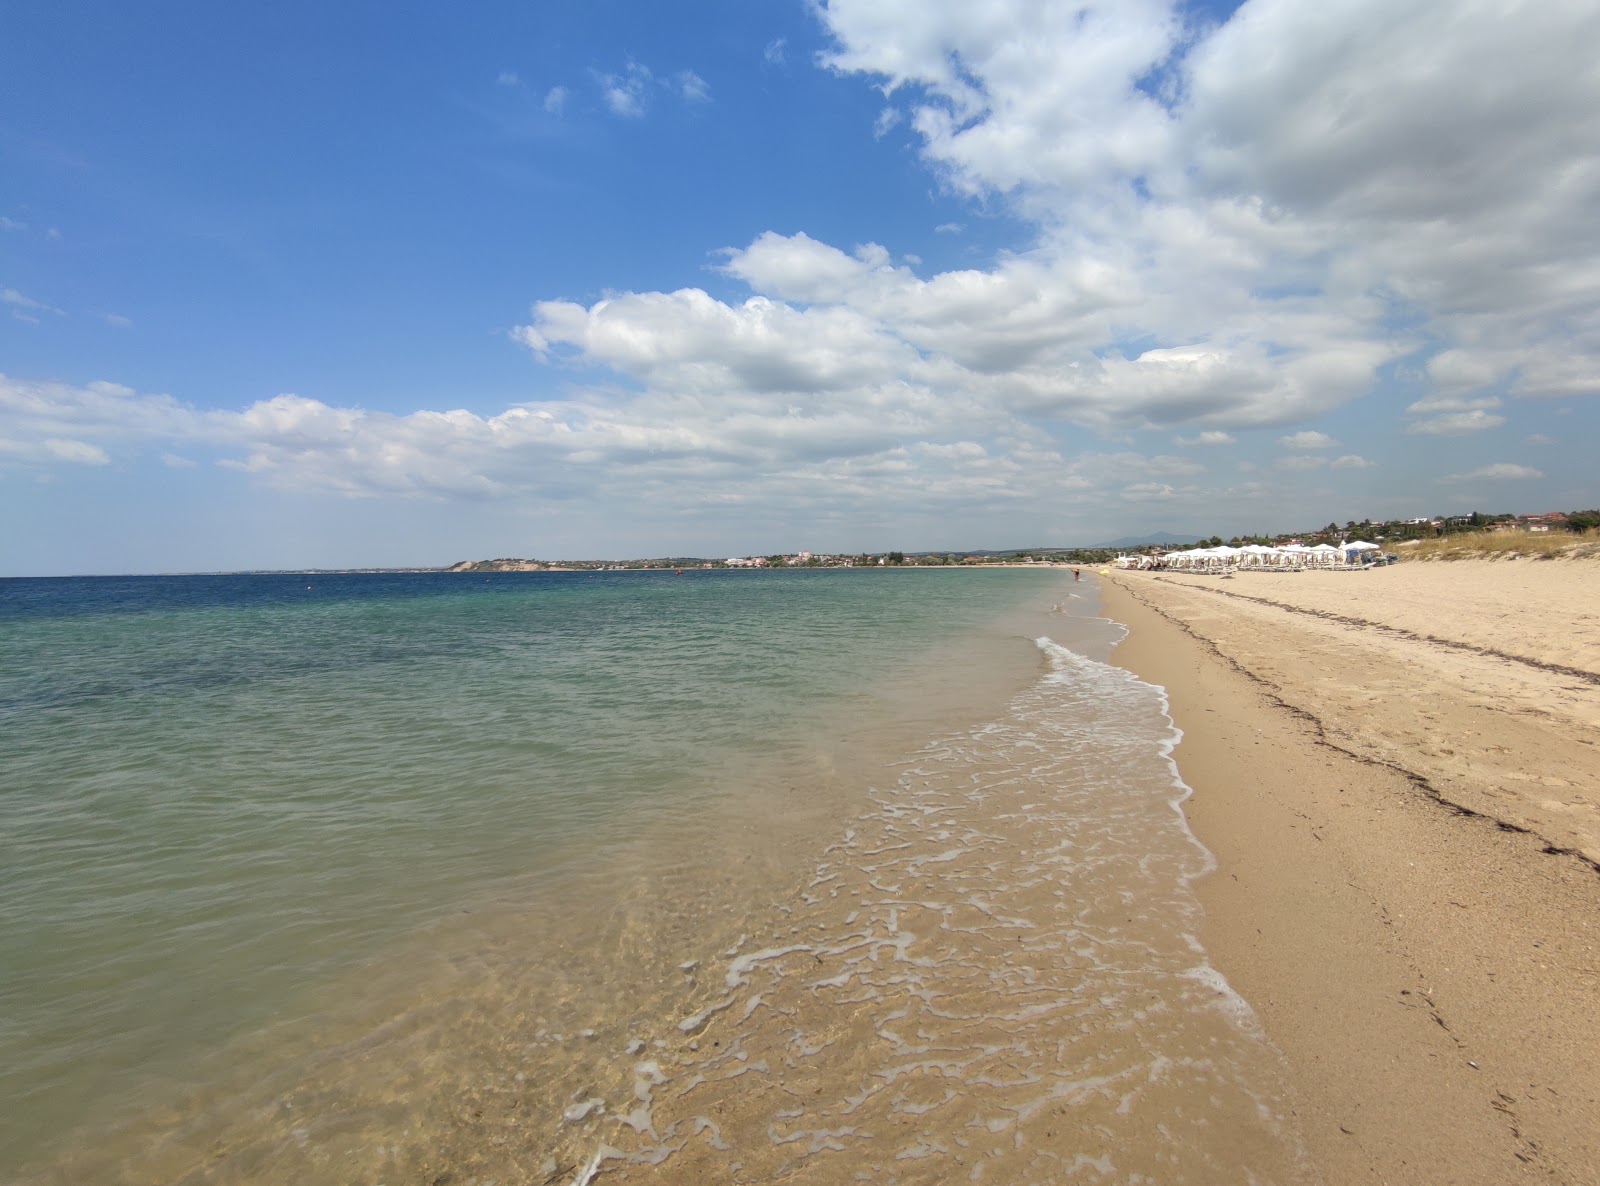 Fotografie cu Nea Iraklia beach cu o suprafață de nisip strălucitor